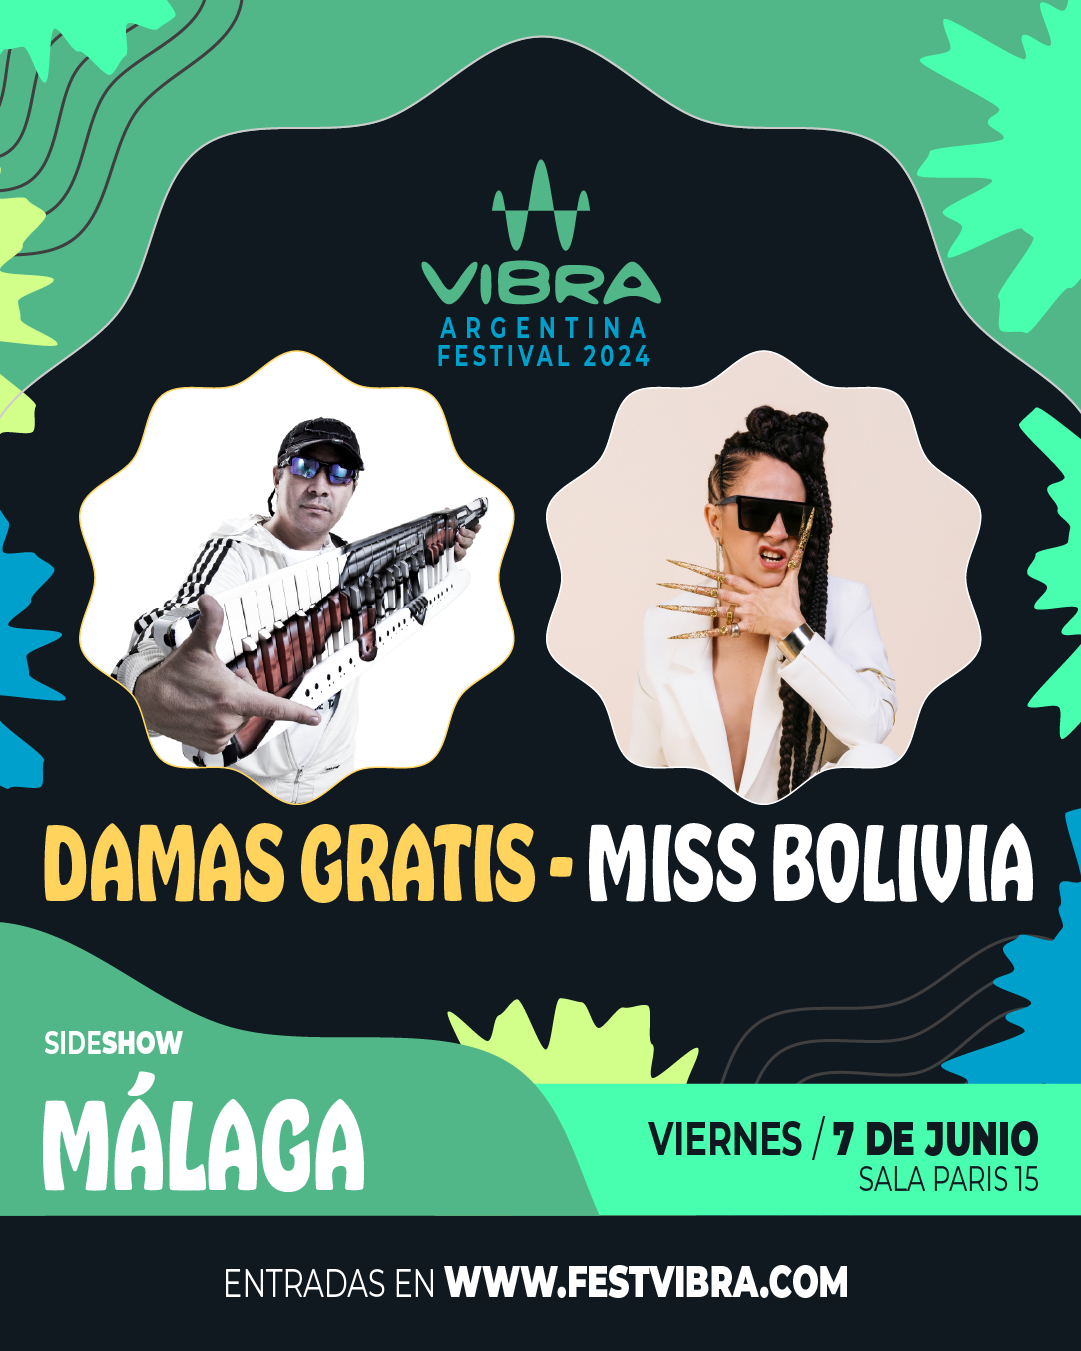 VIBRA ARGENTINA FESTIVAL 2024 en MALAGA, sala paris 15, Viernes 7 Junio Damas Gratis y Miss Bolivia. Entradas y Info: www.festvibra.com